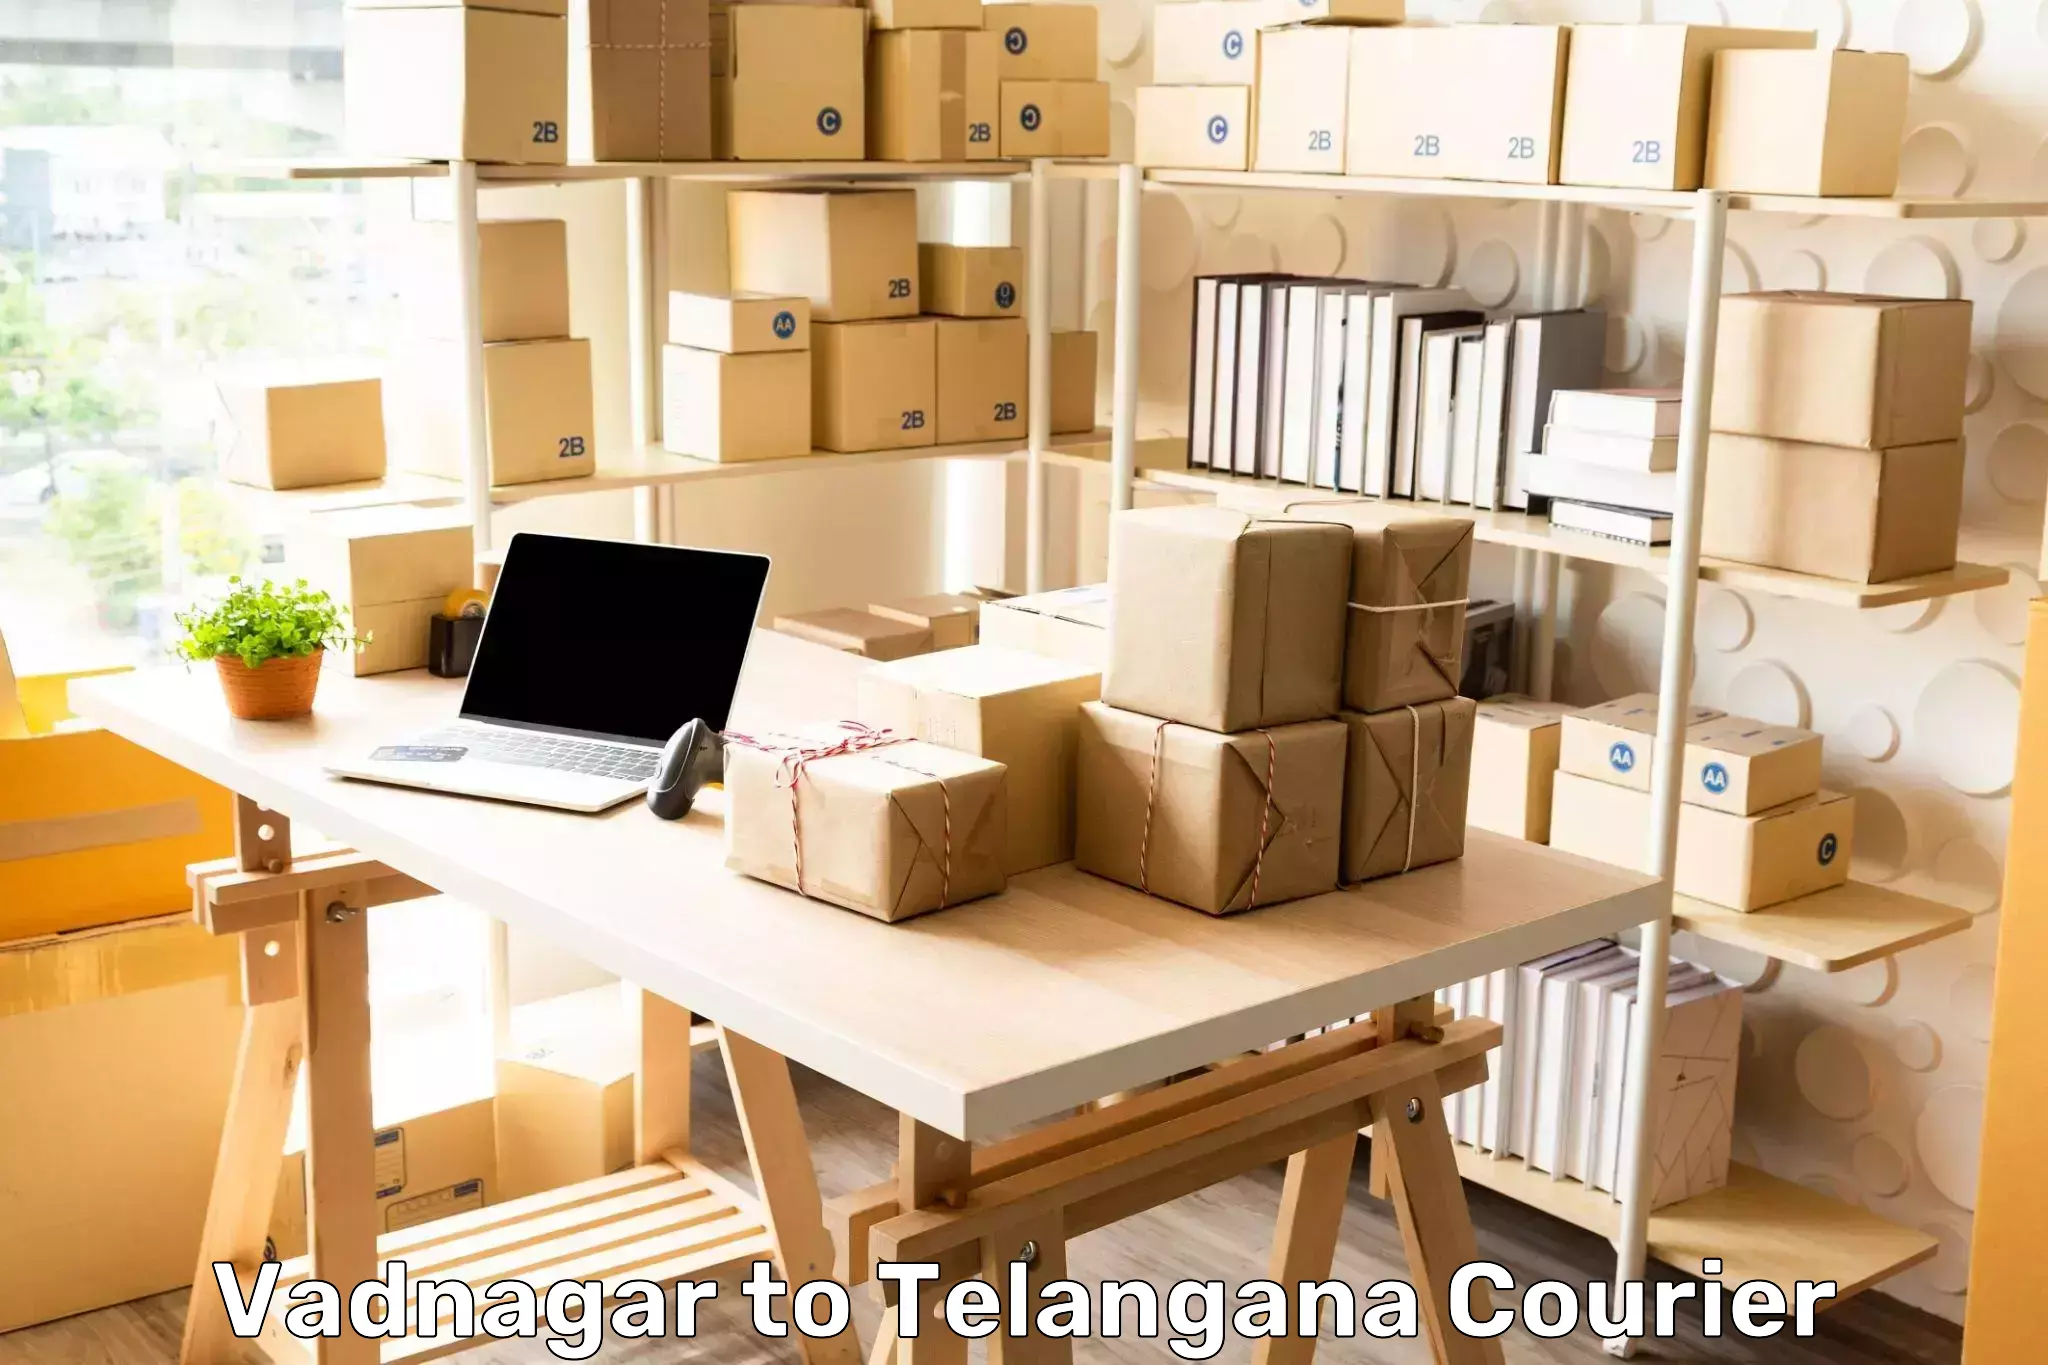 24/7 courier service Vadnagar to Shankarpalle